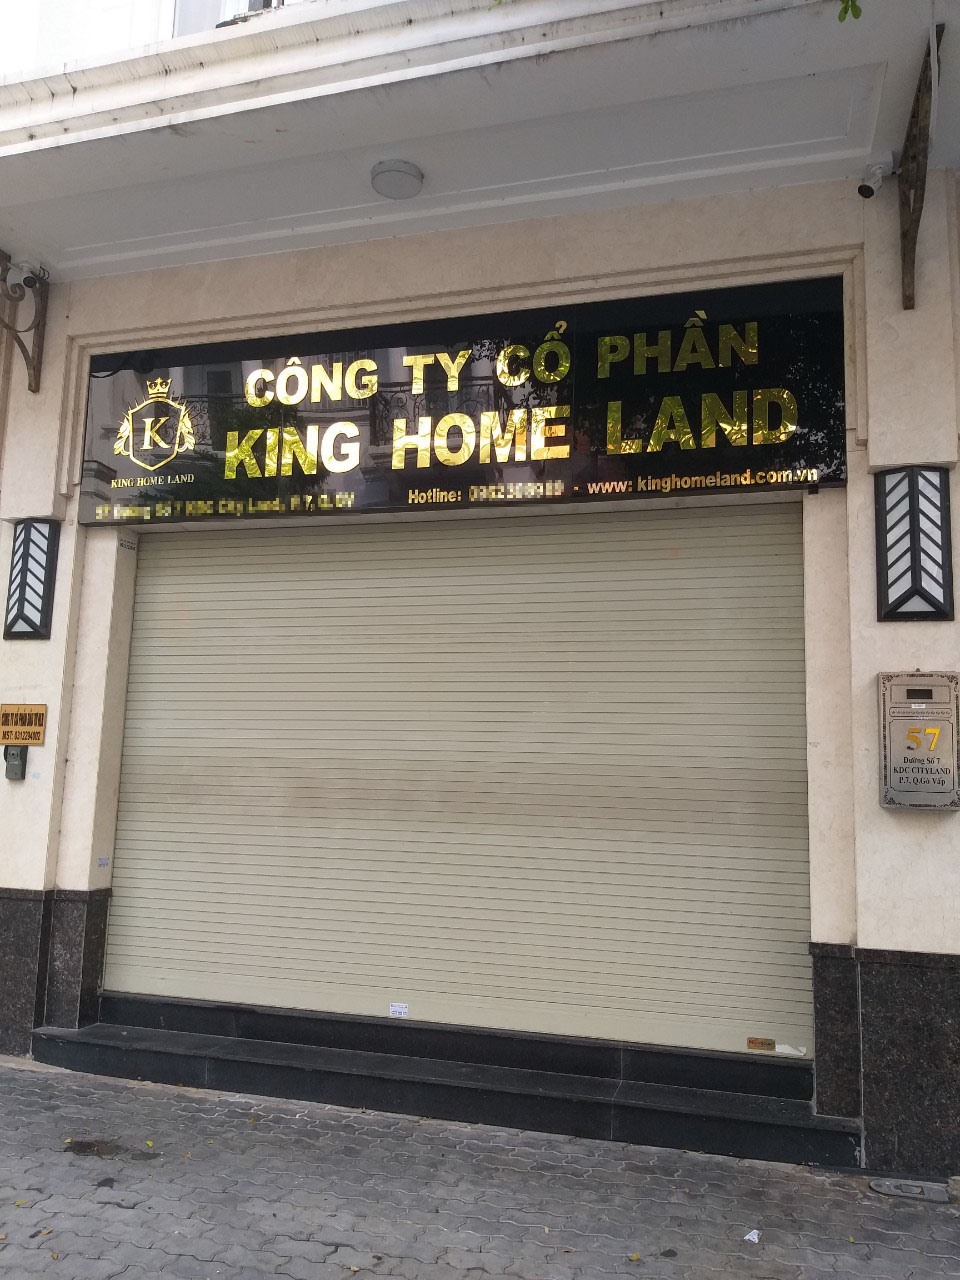 Văn phòng giao dịch của Công ty CP King home land đóng cửa im ắng trong nhiều tháng qua. Ảnh TK.